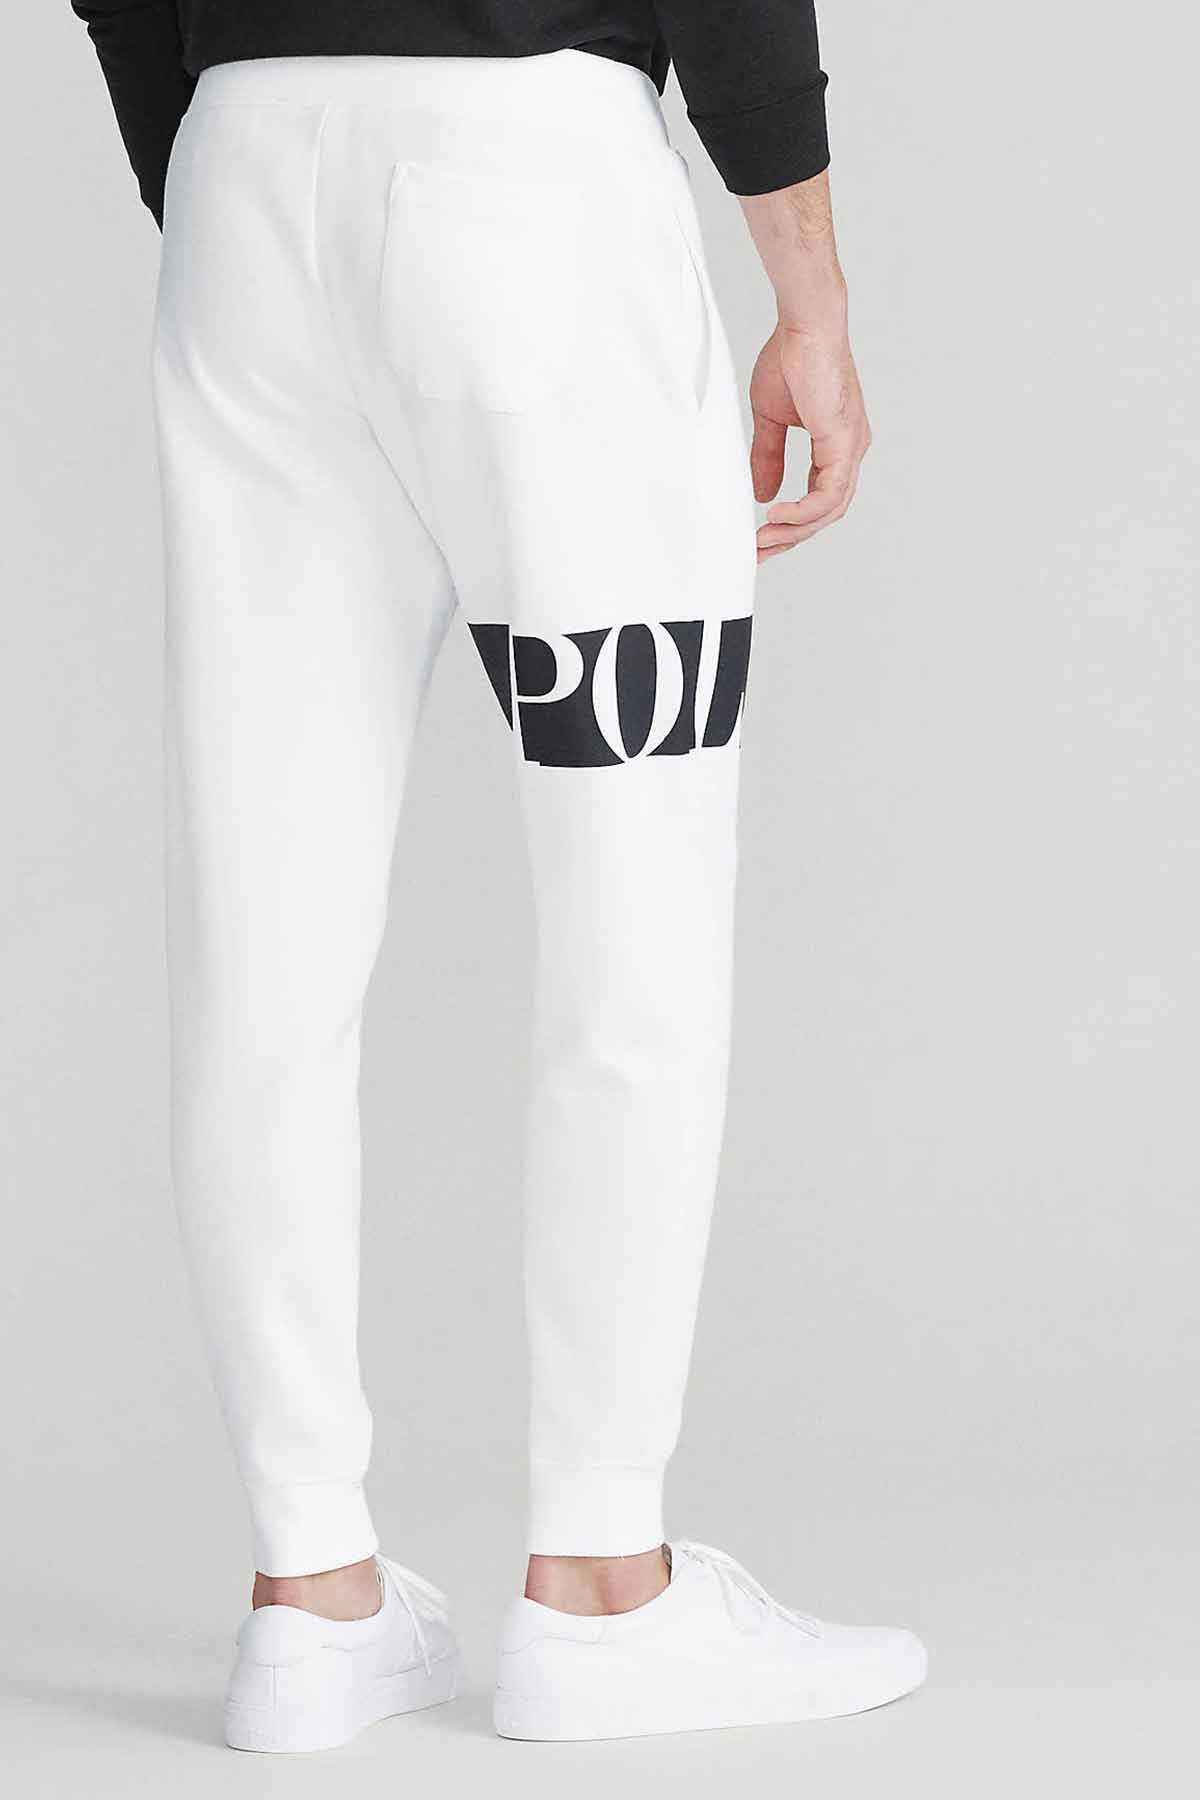 Polo Ralph Lauren Logolu Eşofman Altı-Libas Trendy Fashion Store